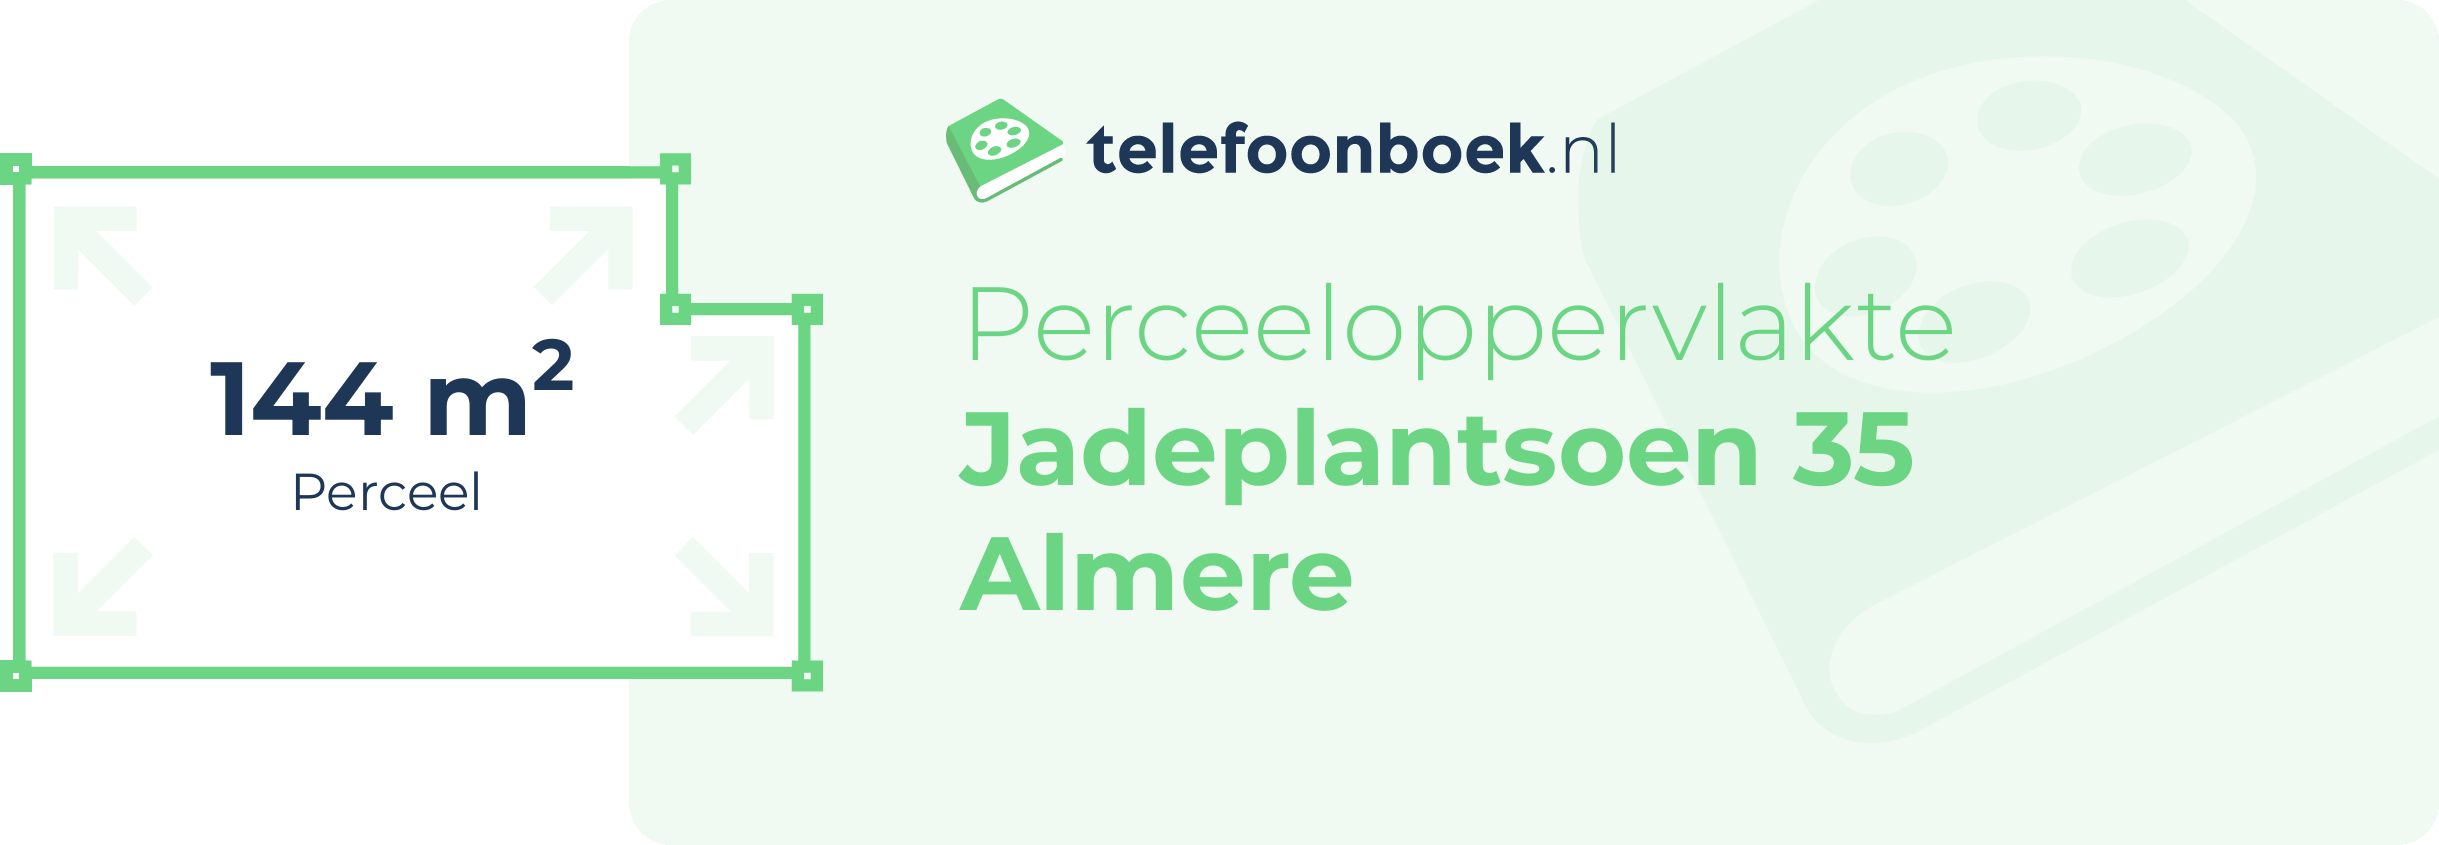 Perceeloppervlakte Jadeplantsoen 35 Almere